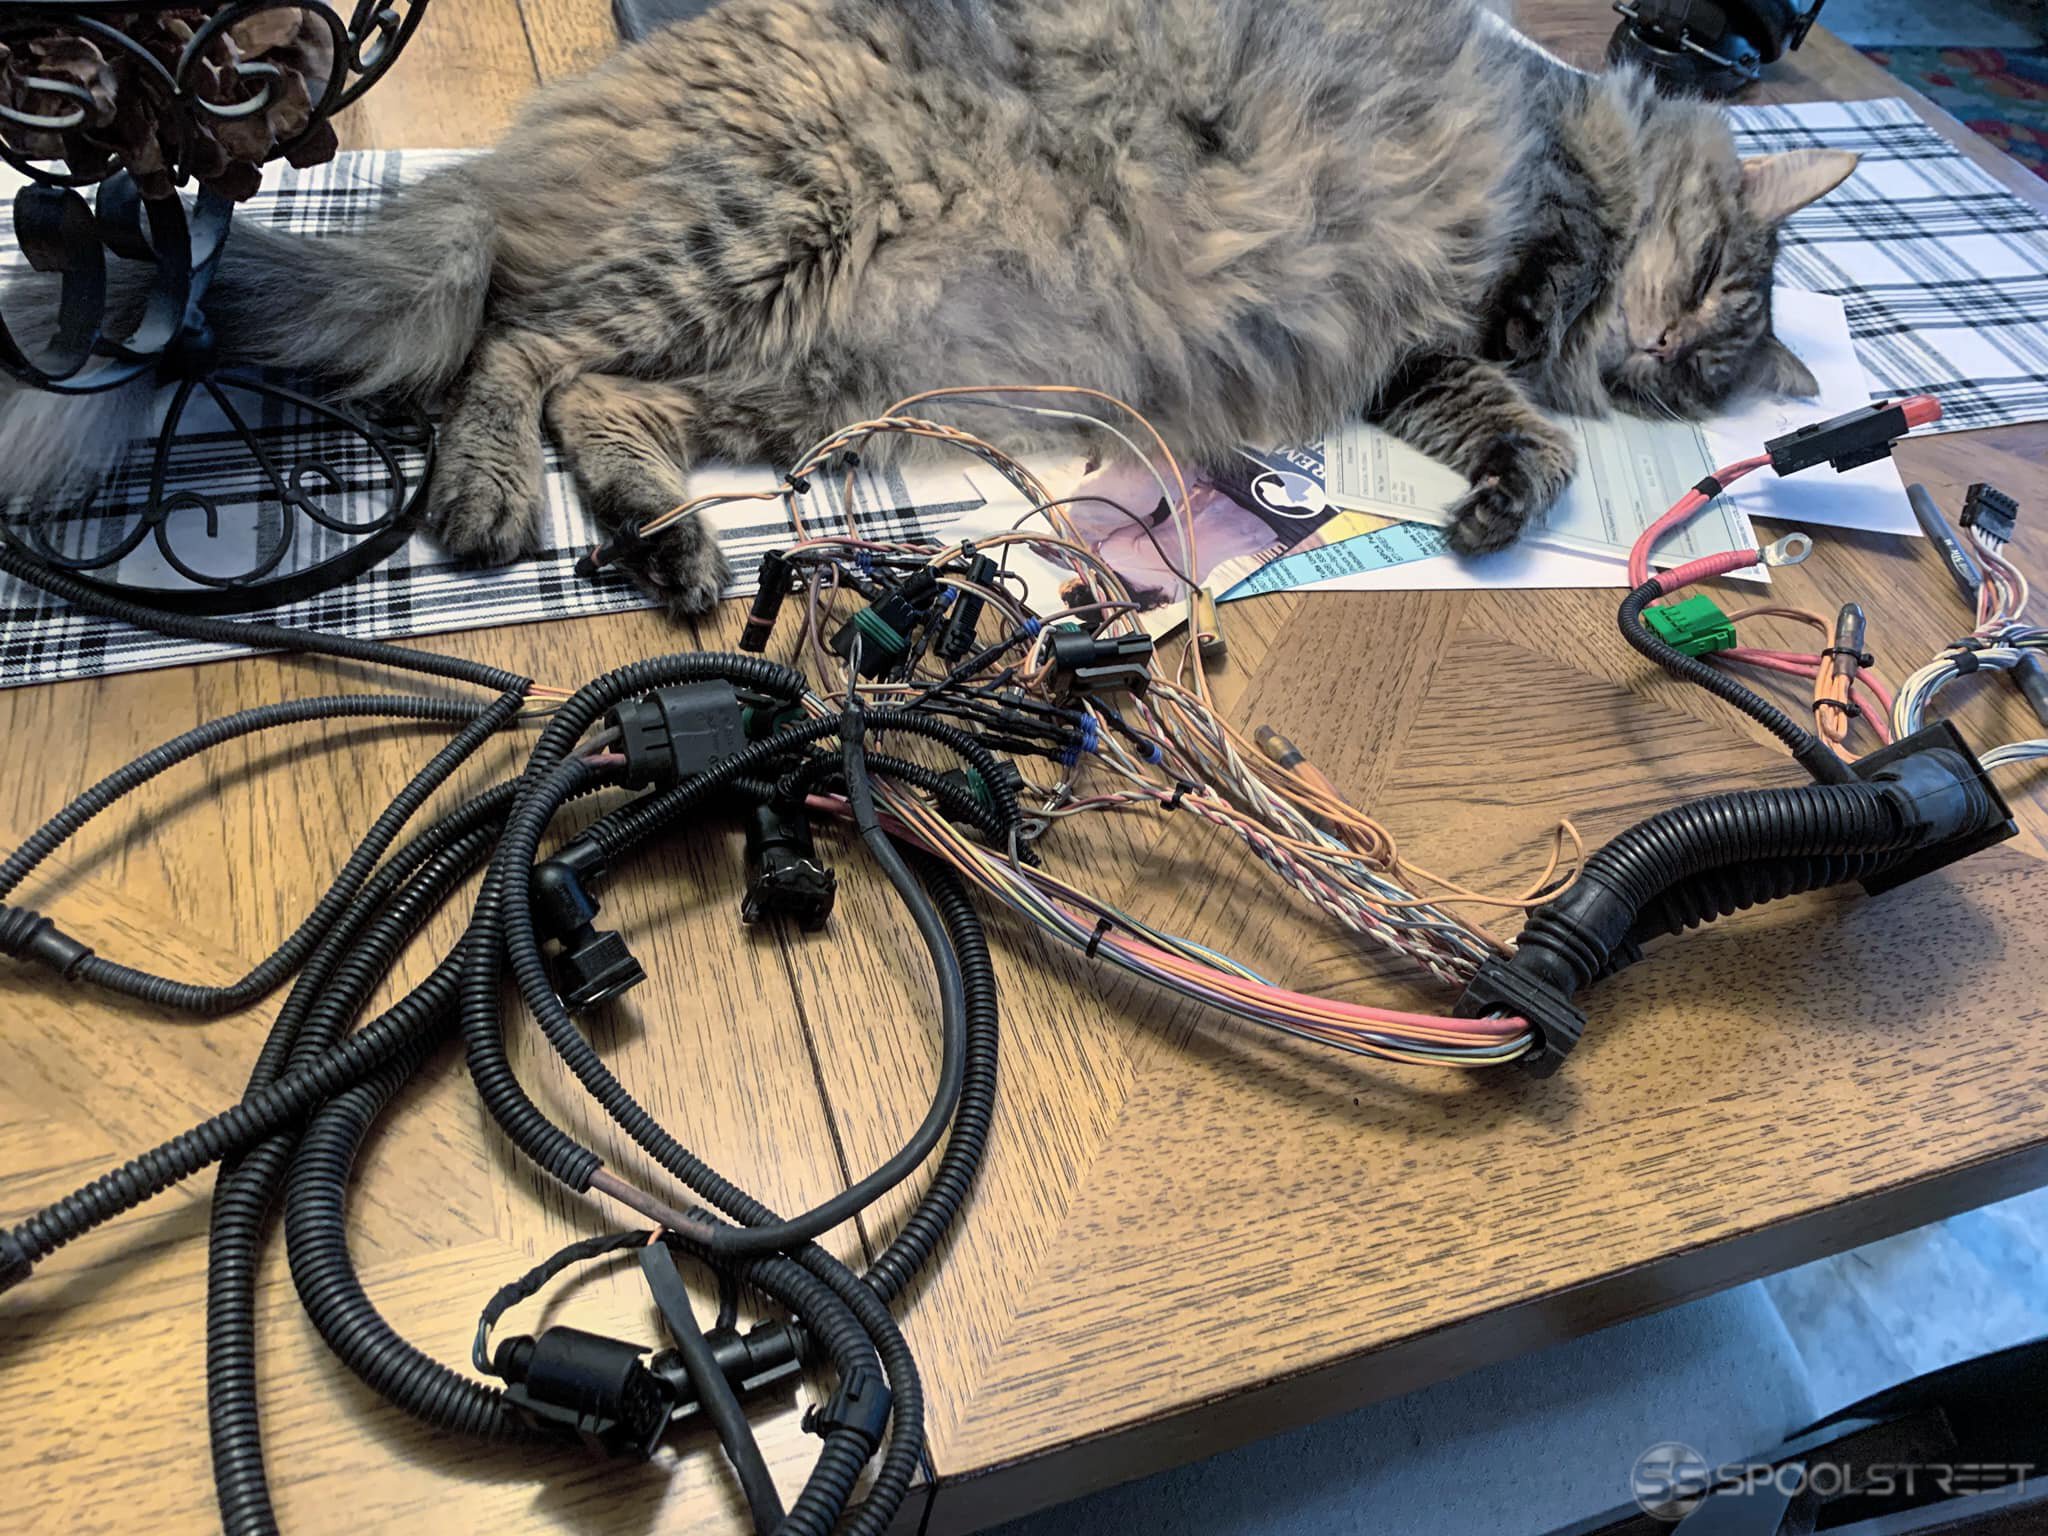 wiring mess